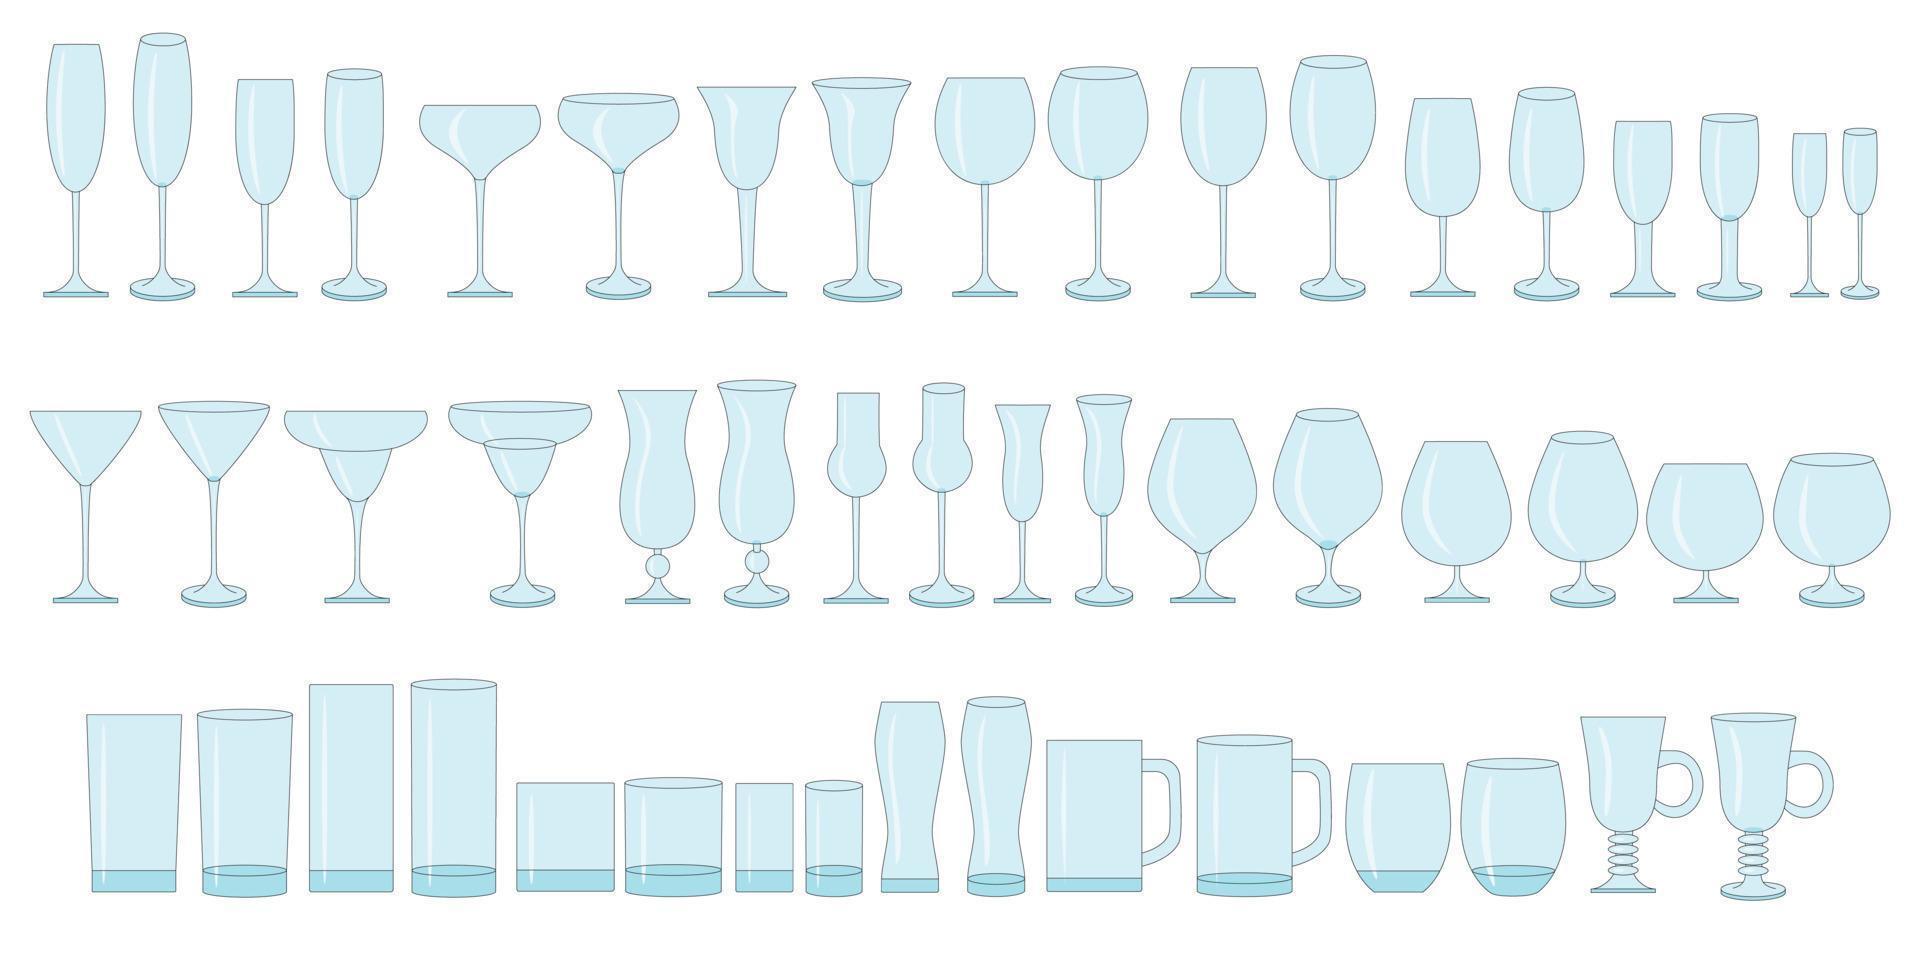 kleur glazen voor wijn, champagne, whisky, cognac. soorten glazen voor alcoholische en niet-alcoholische dranken. vector